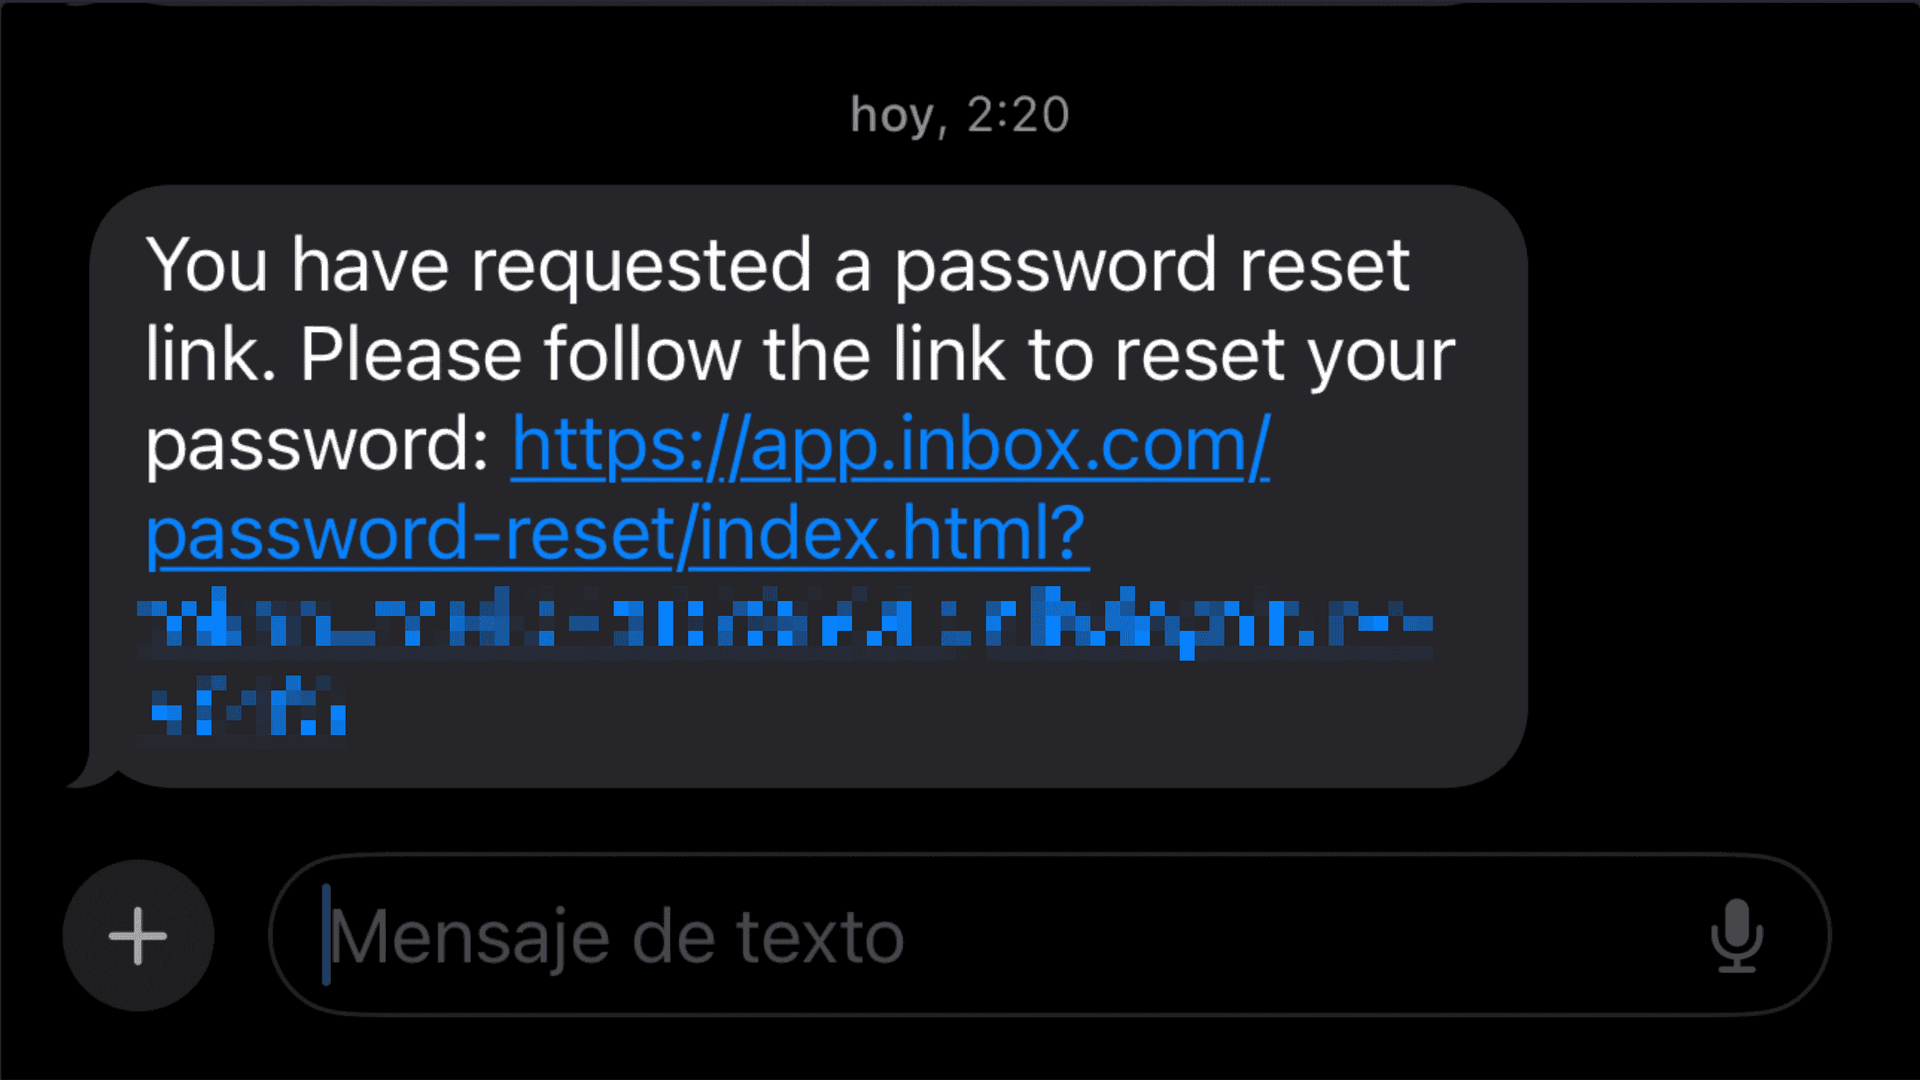 inbox.com password reset link